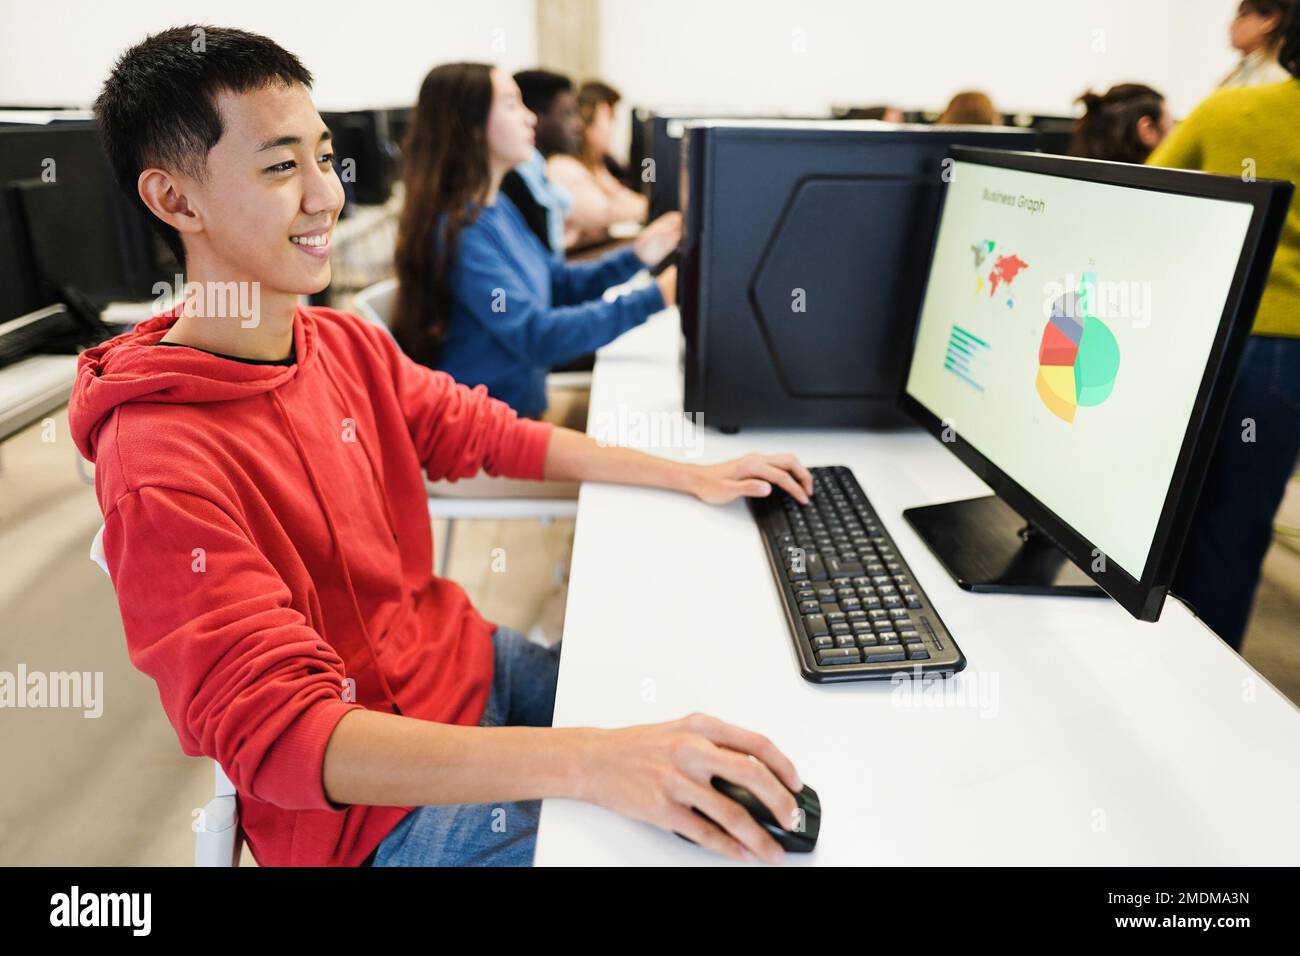 Junge Schüler, die Computer im Technikunterricht im Schulraum benutzen - Fokus auf dem asiatischen Männerauge Stockfoto